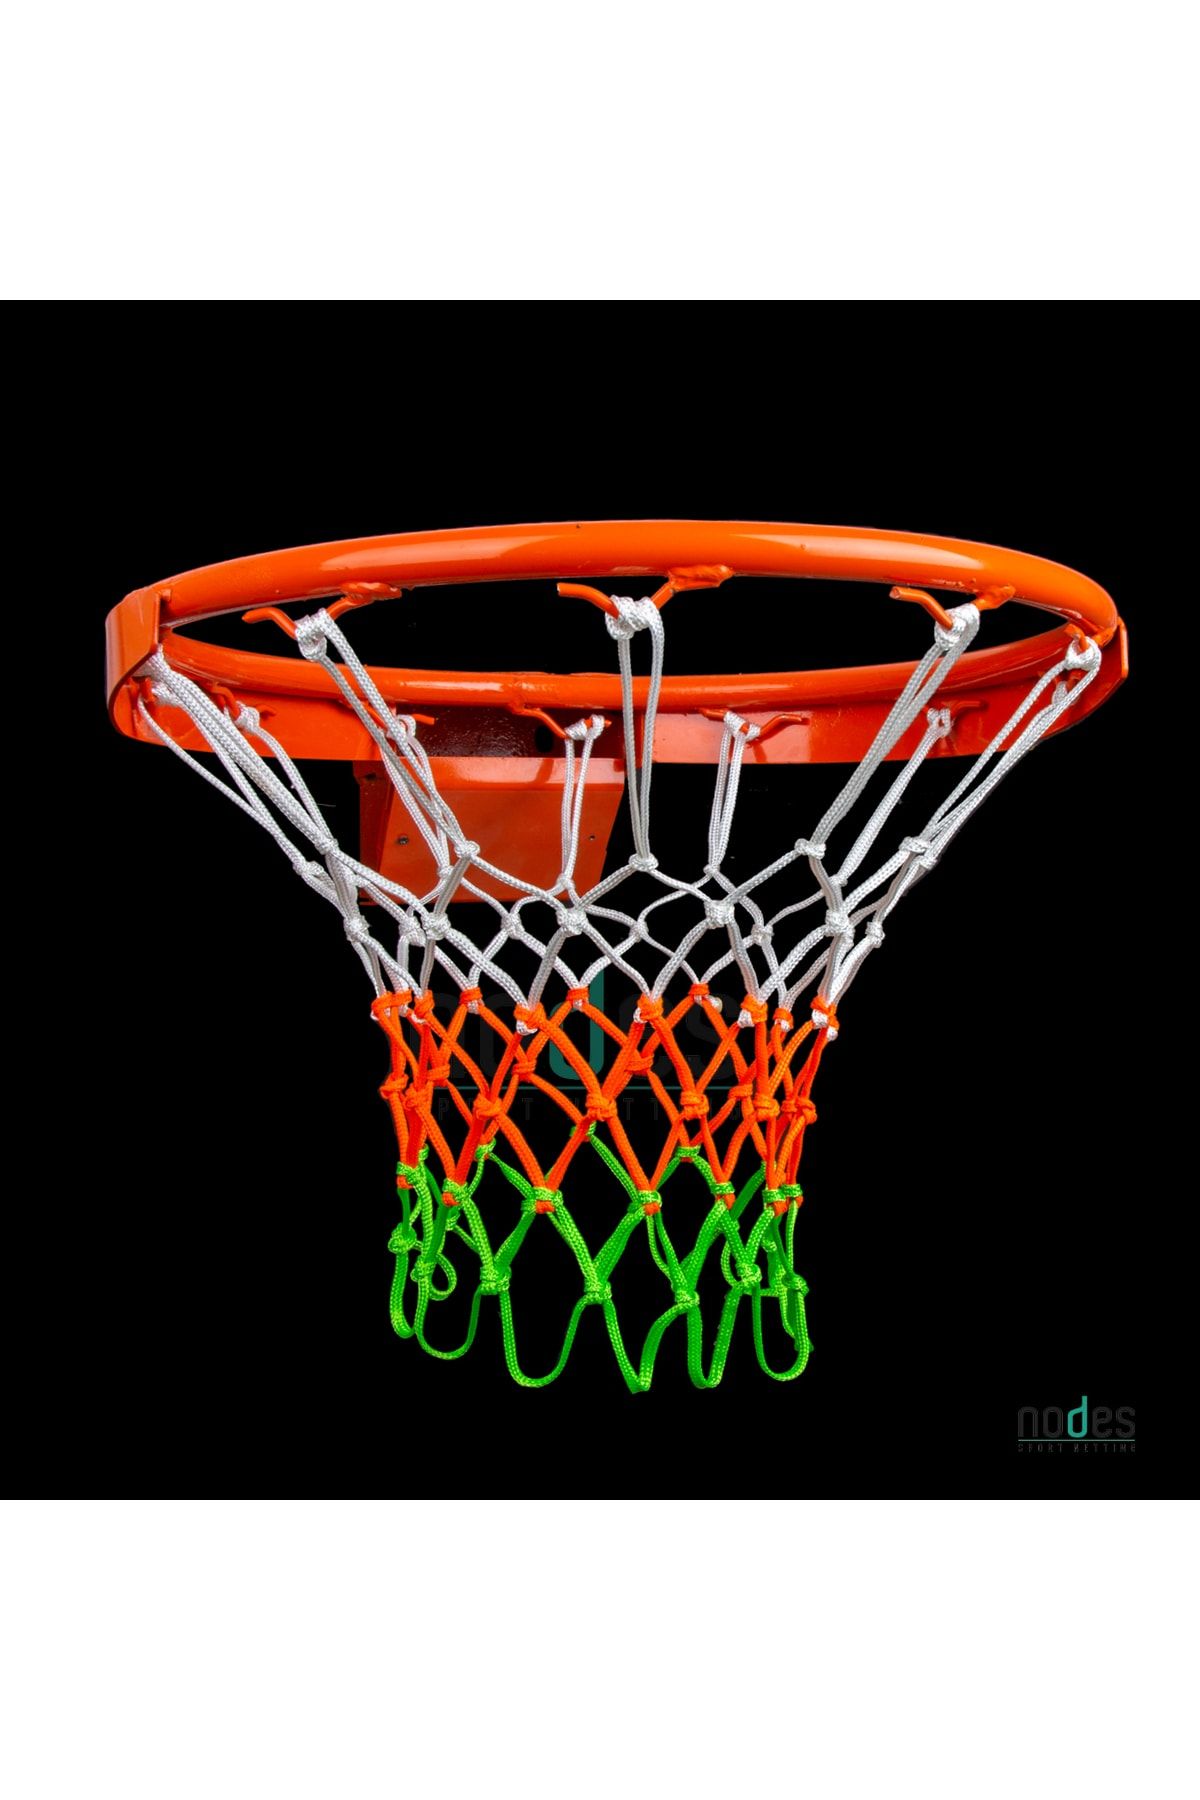 Nodes Basketbol Pota Filesi Ağı - 3 Renk - Profesyonel - 2 Adet